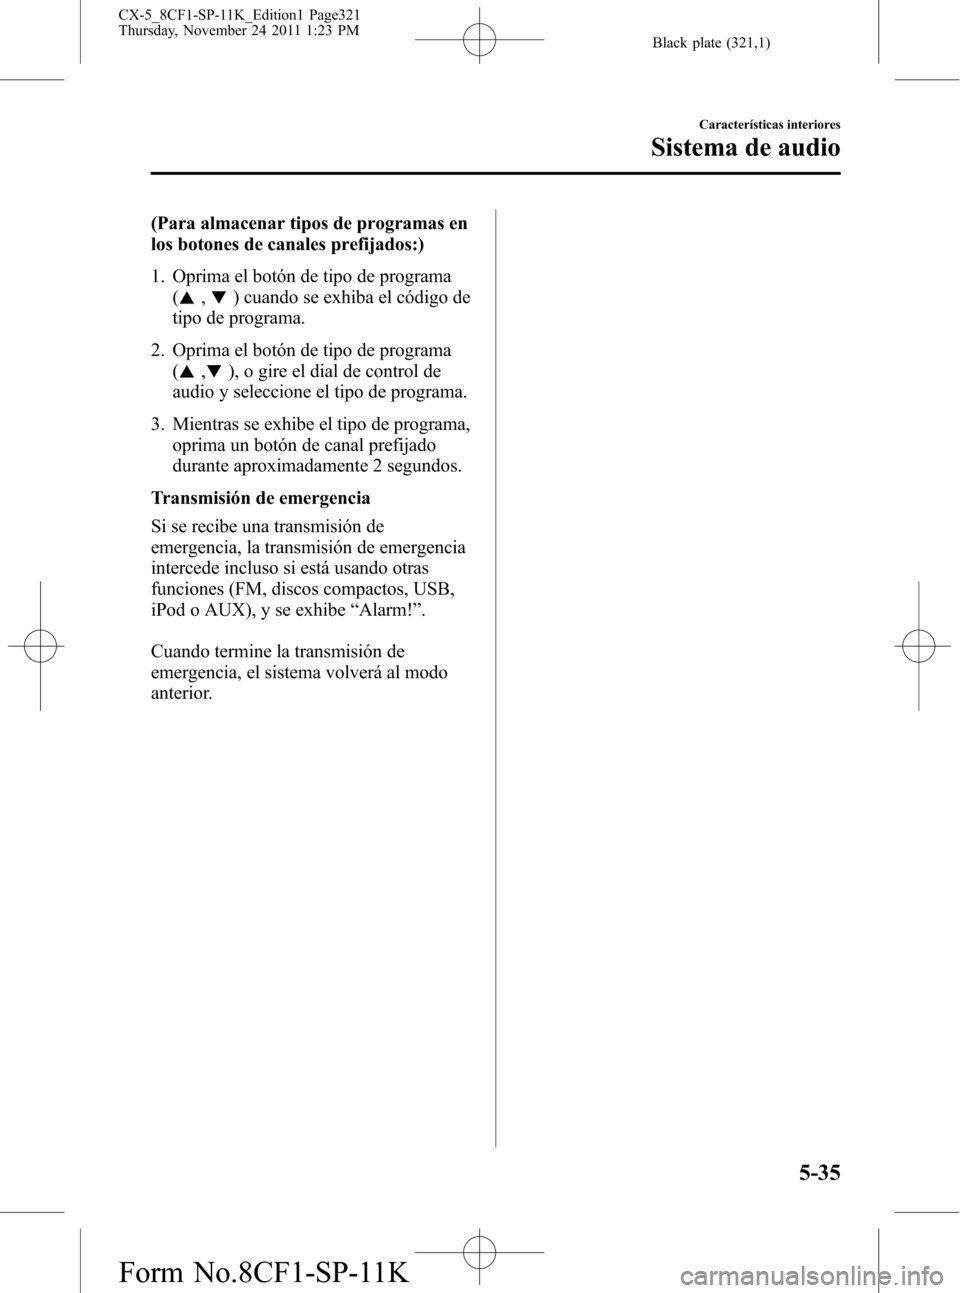 MAZDA MODEL CX-5 2012  Manual del propietario (in Spanish)  Black plate (321,1)
(Para almacenar tipos de programas en
los botones de canales prefijados:)
1. Oprima el botón de tipo de programa
(
,) cuando se exhiba el código de
tipo de programa.
2. Oprima el